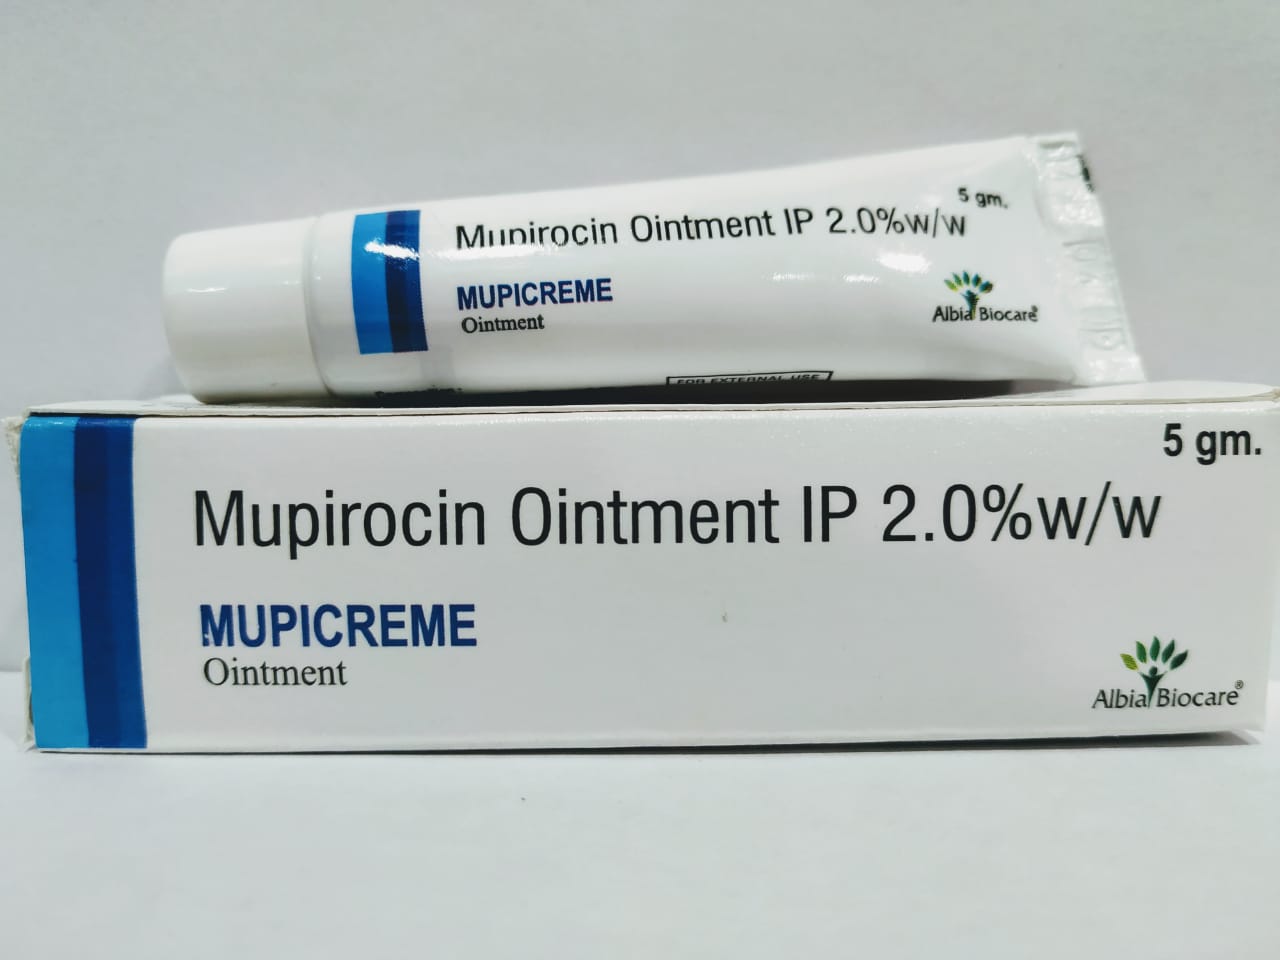 MUPICREME Ointment | Mupirocin 2% w/w